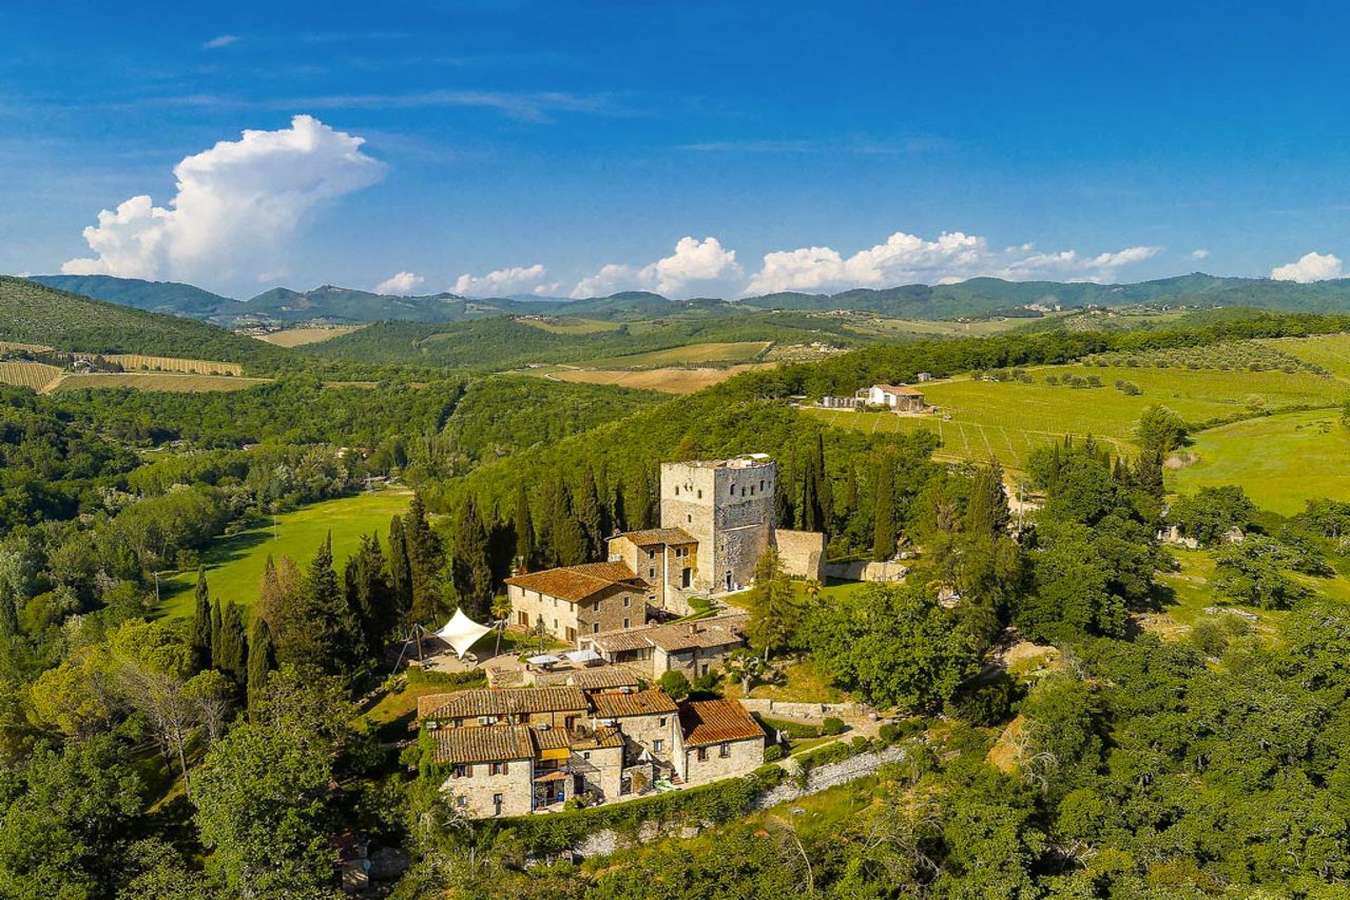 Castelo Di Tornano Gaiole In Chianti, Tuscany - Italy